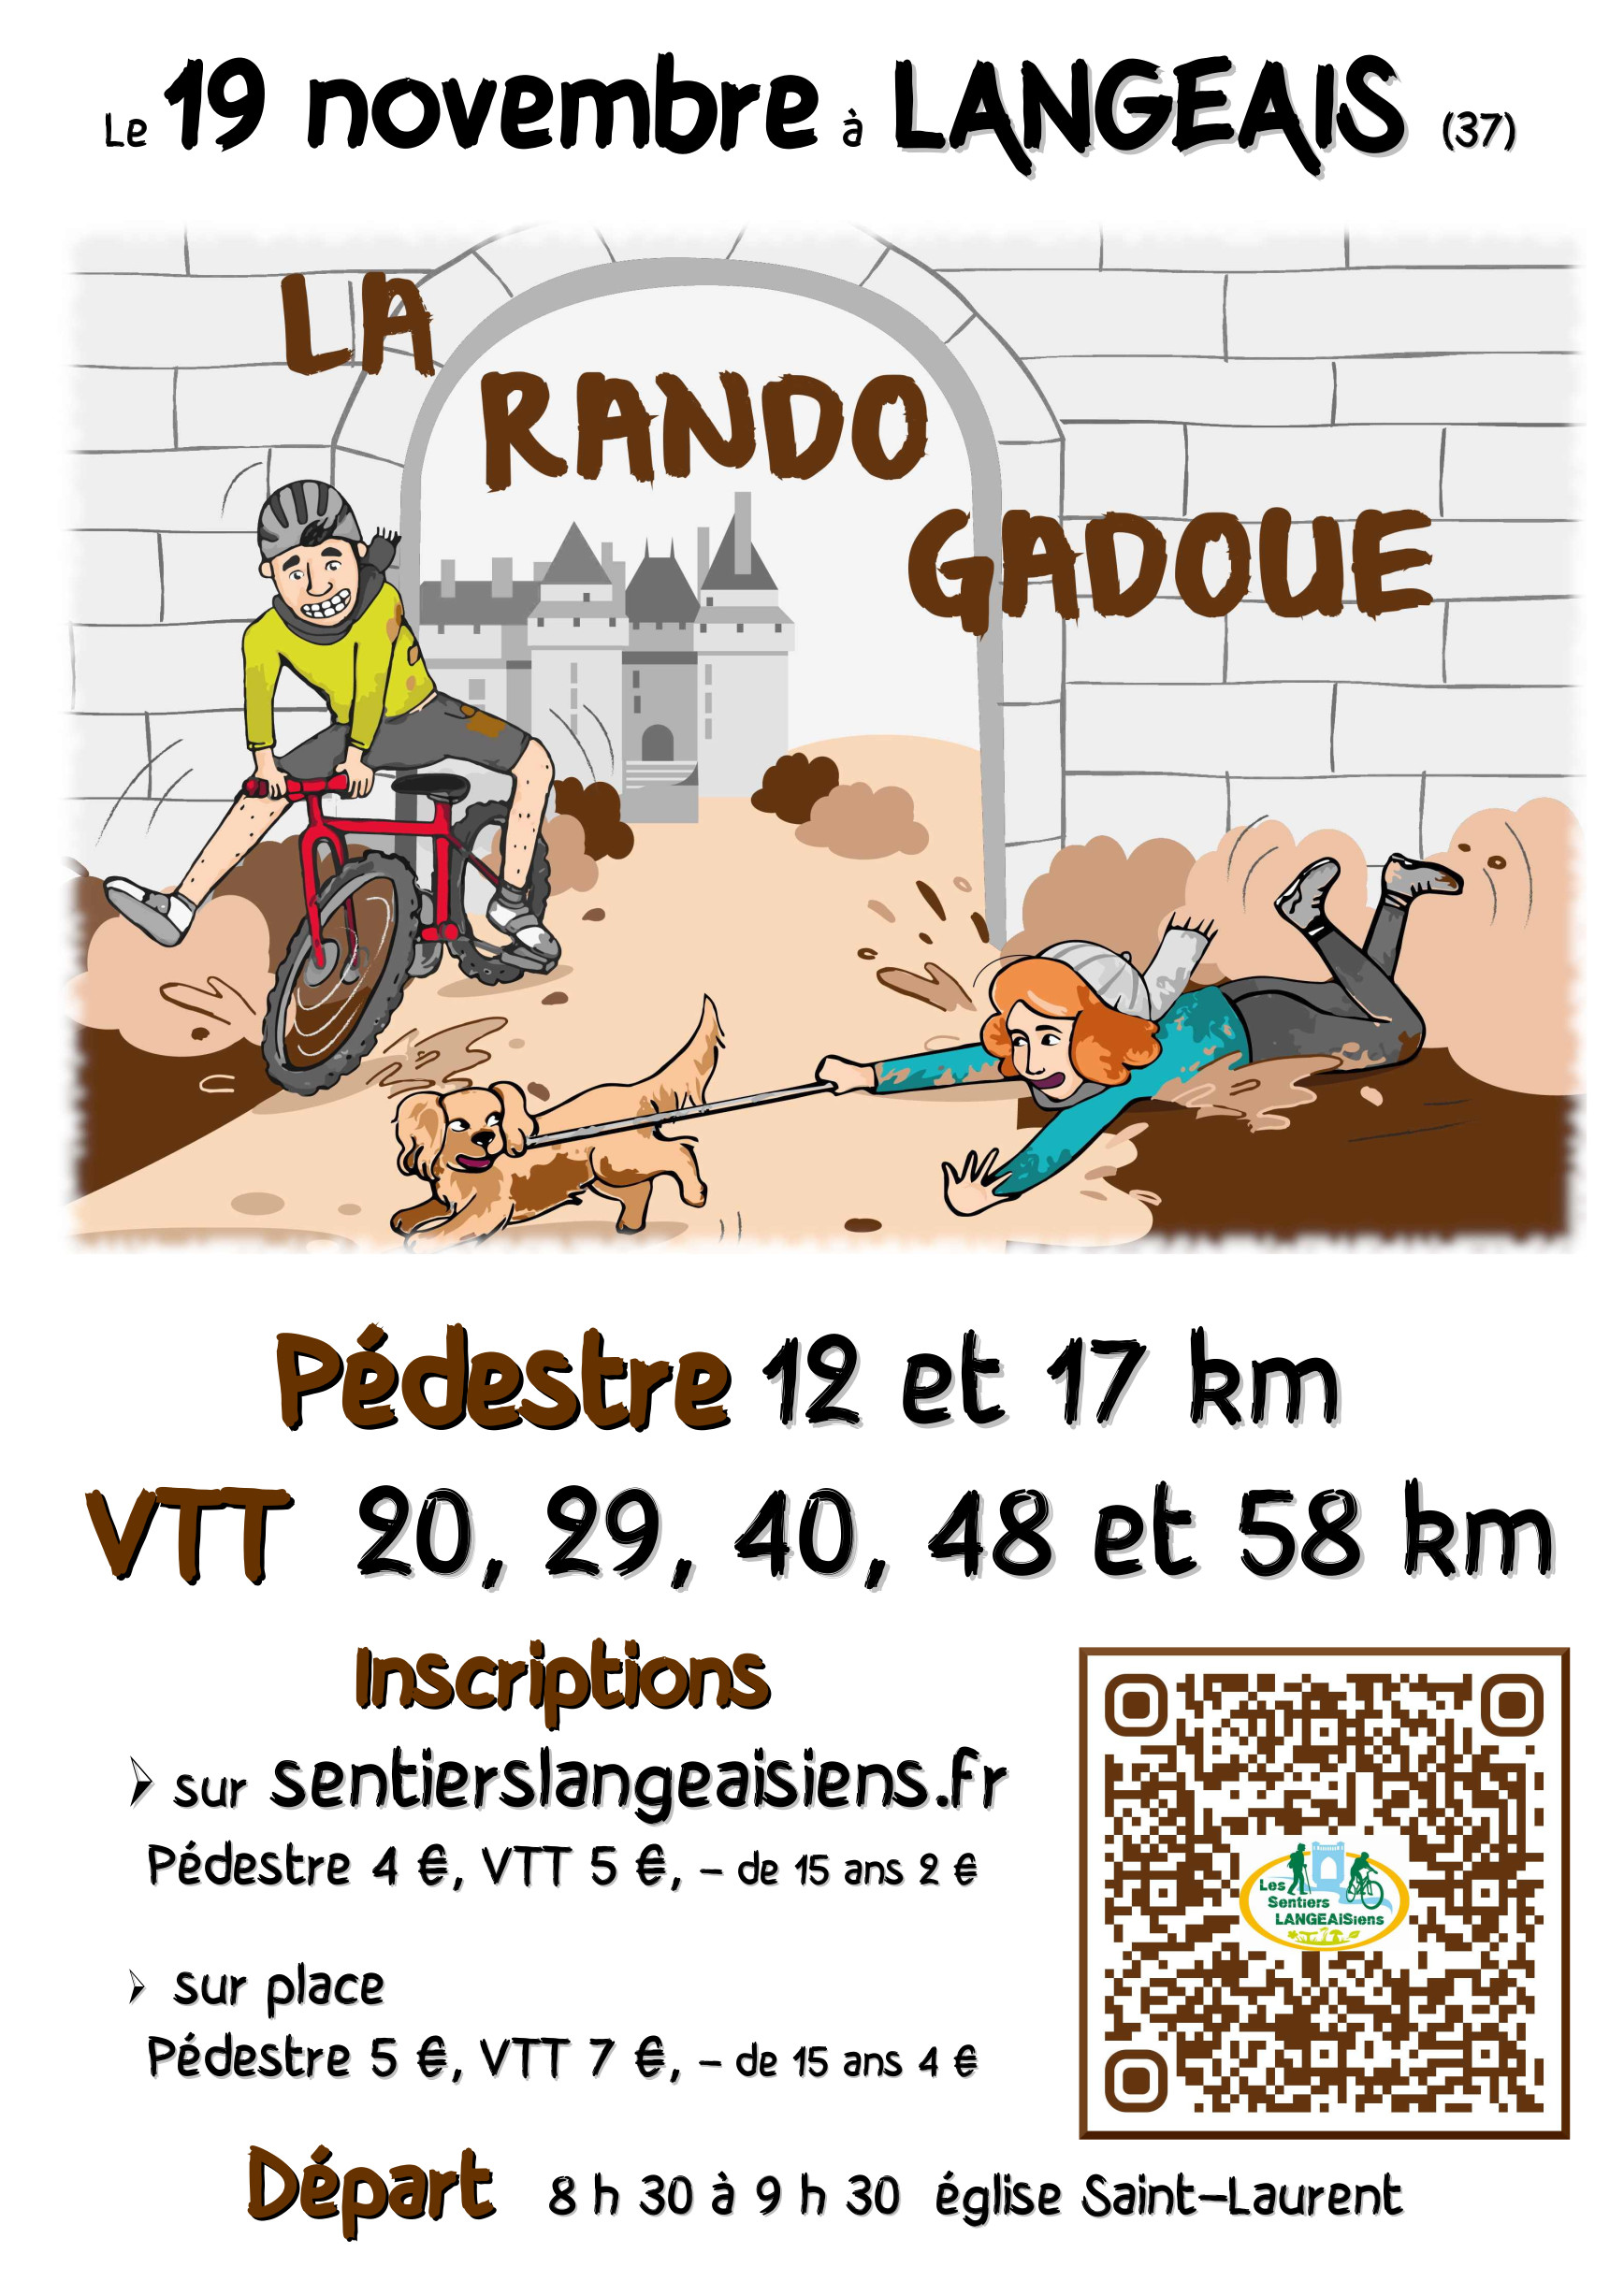 Affiche de La 20ème Rando Gadoue à Langeais